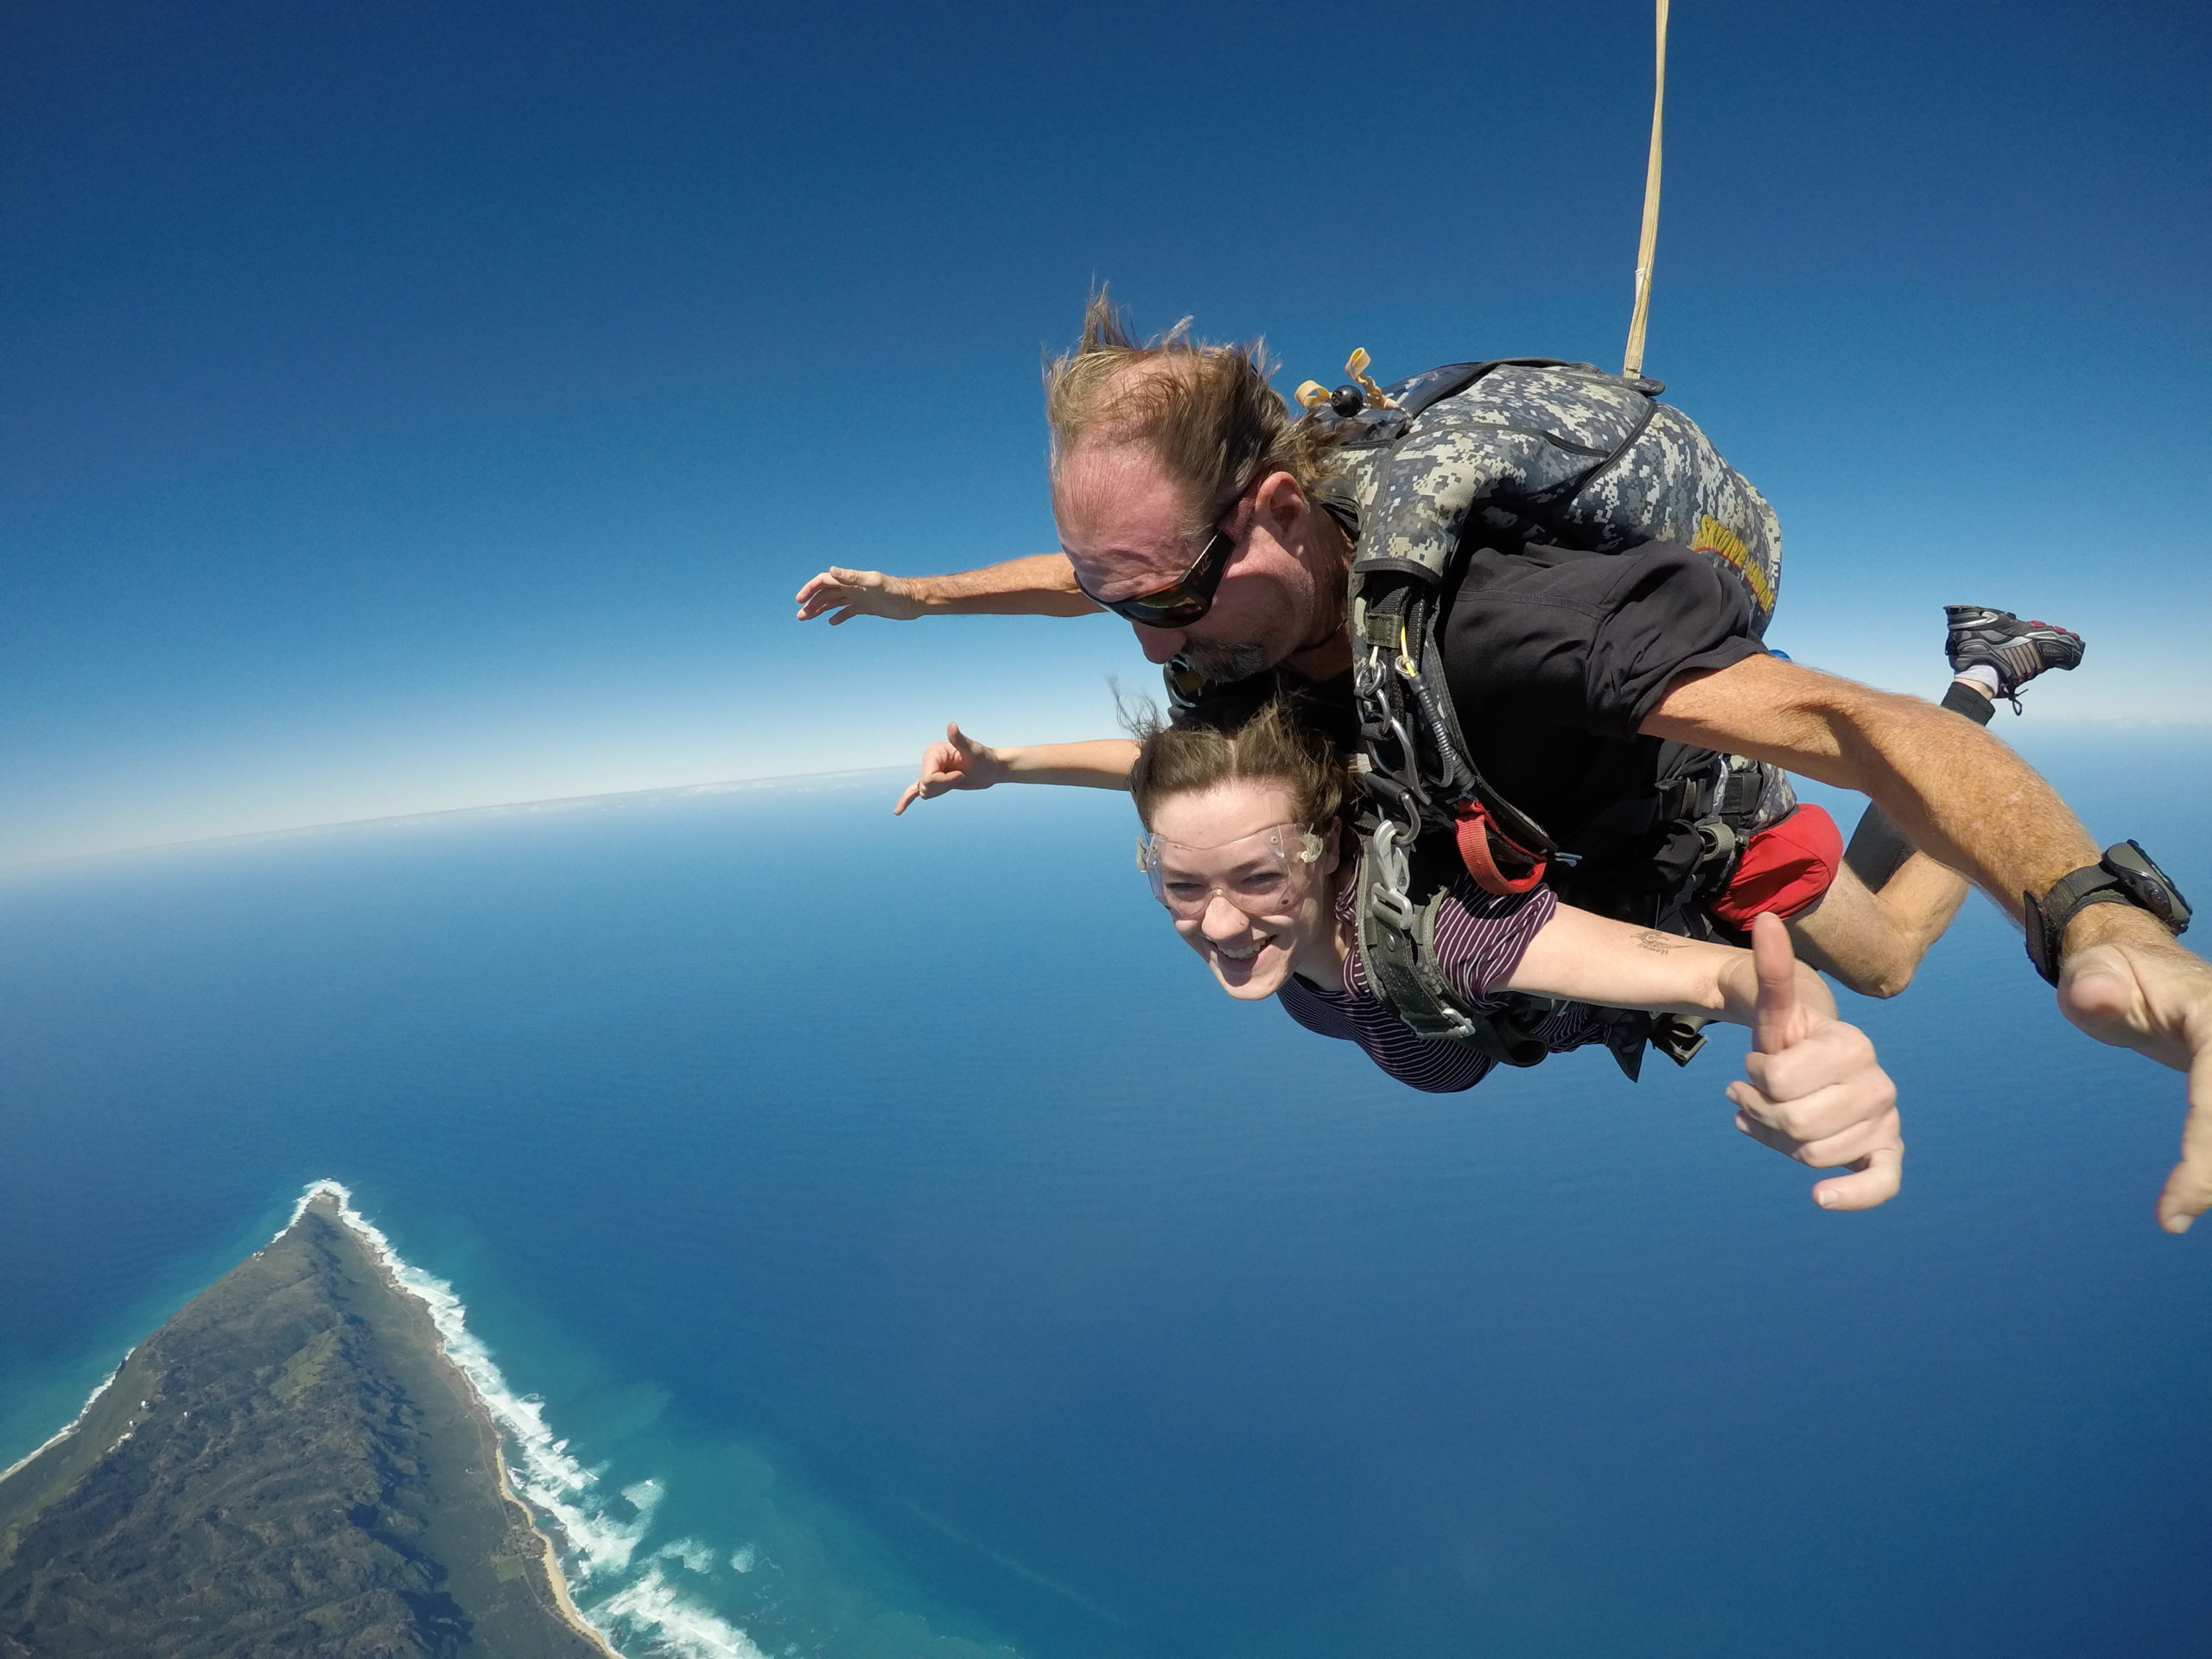 oahu hawaii skydiving